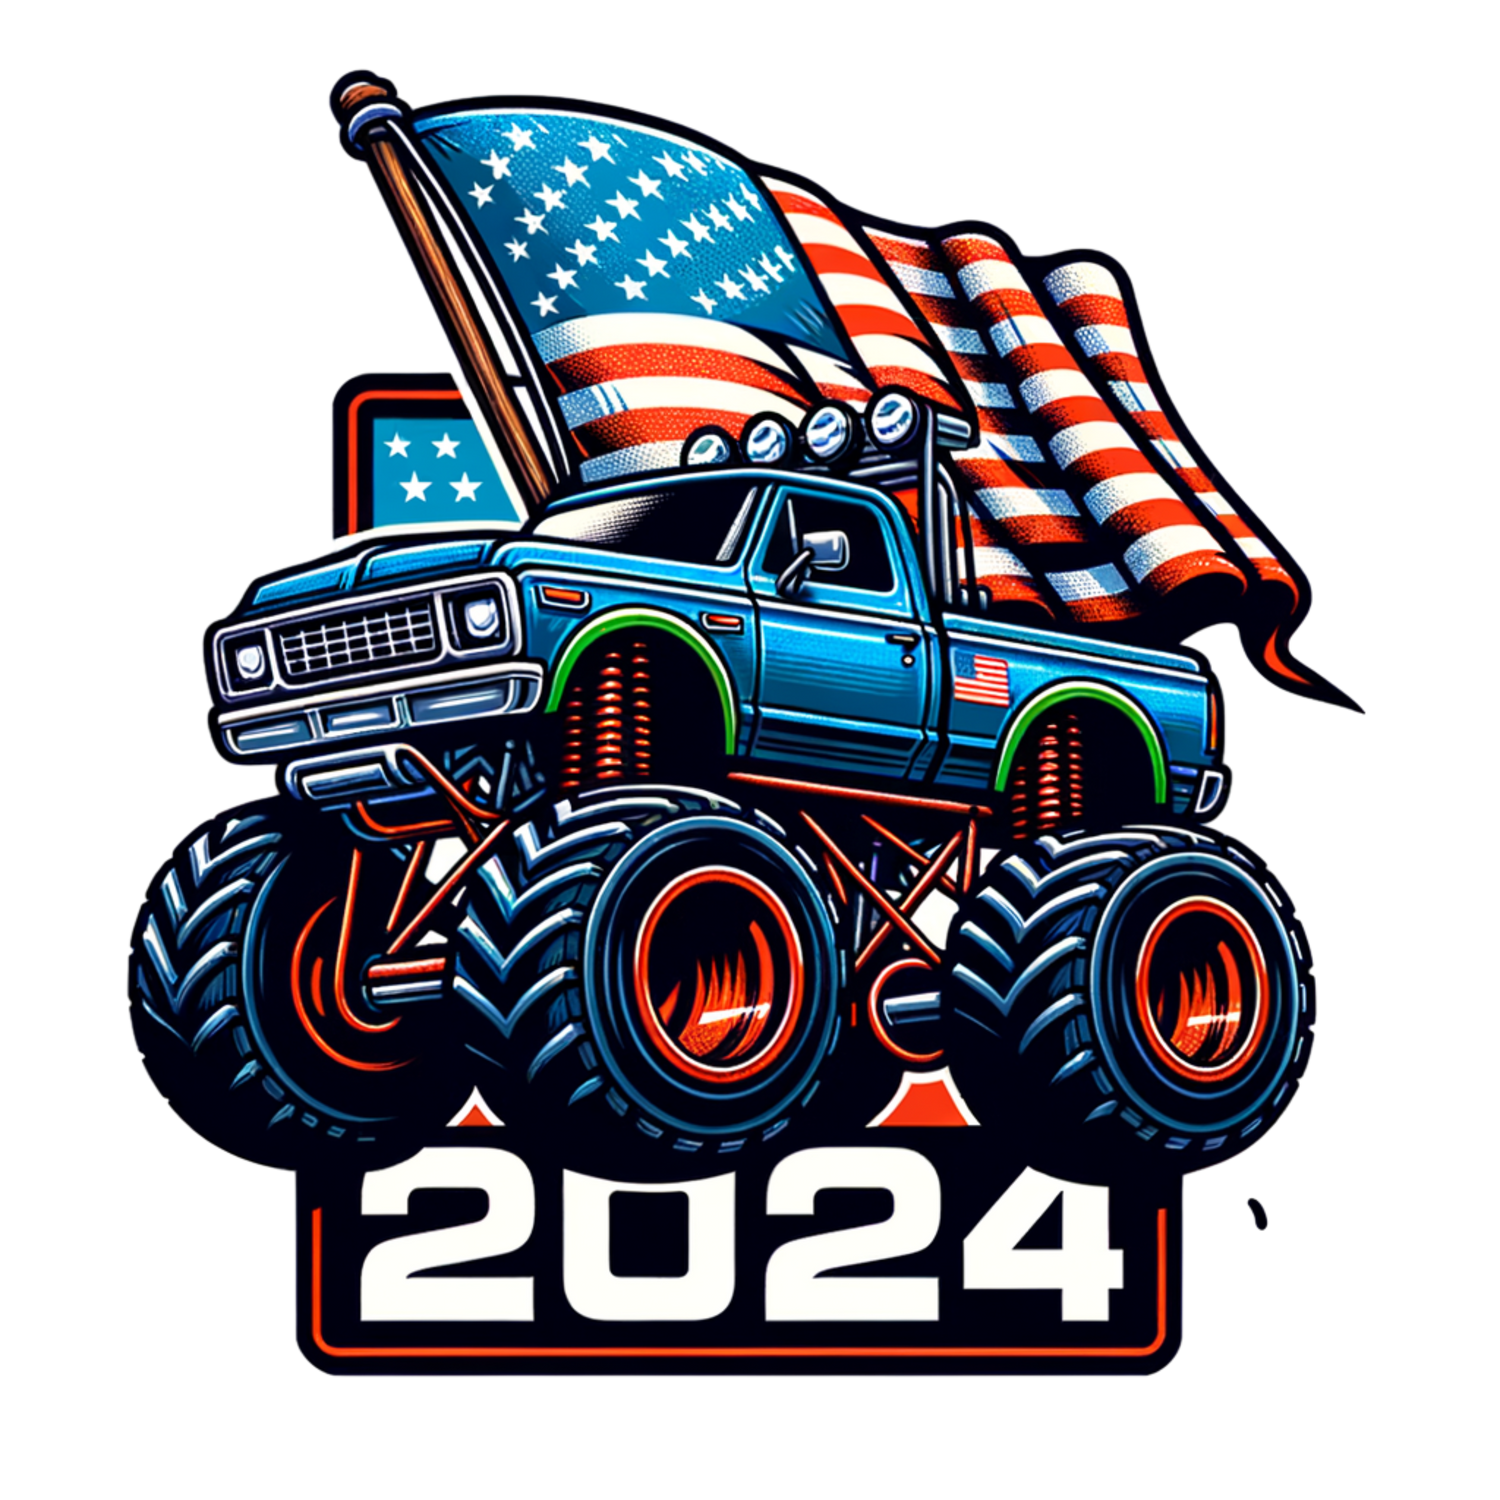 #2024